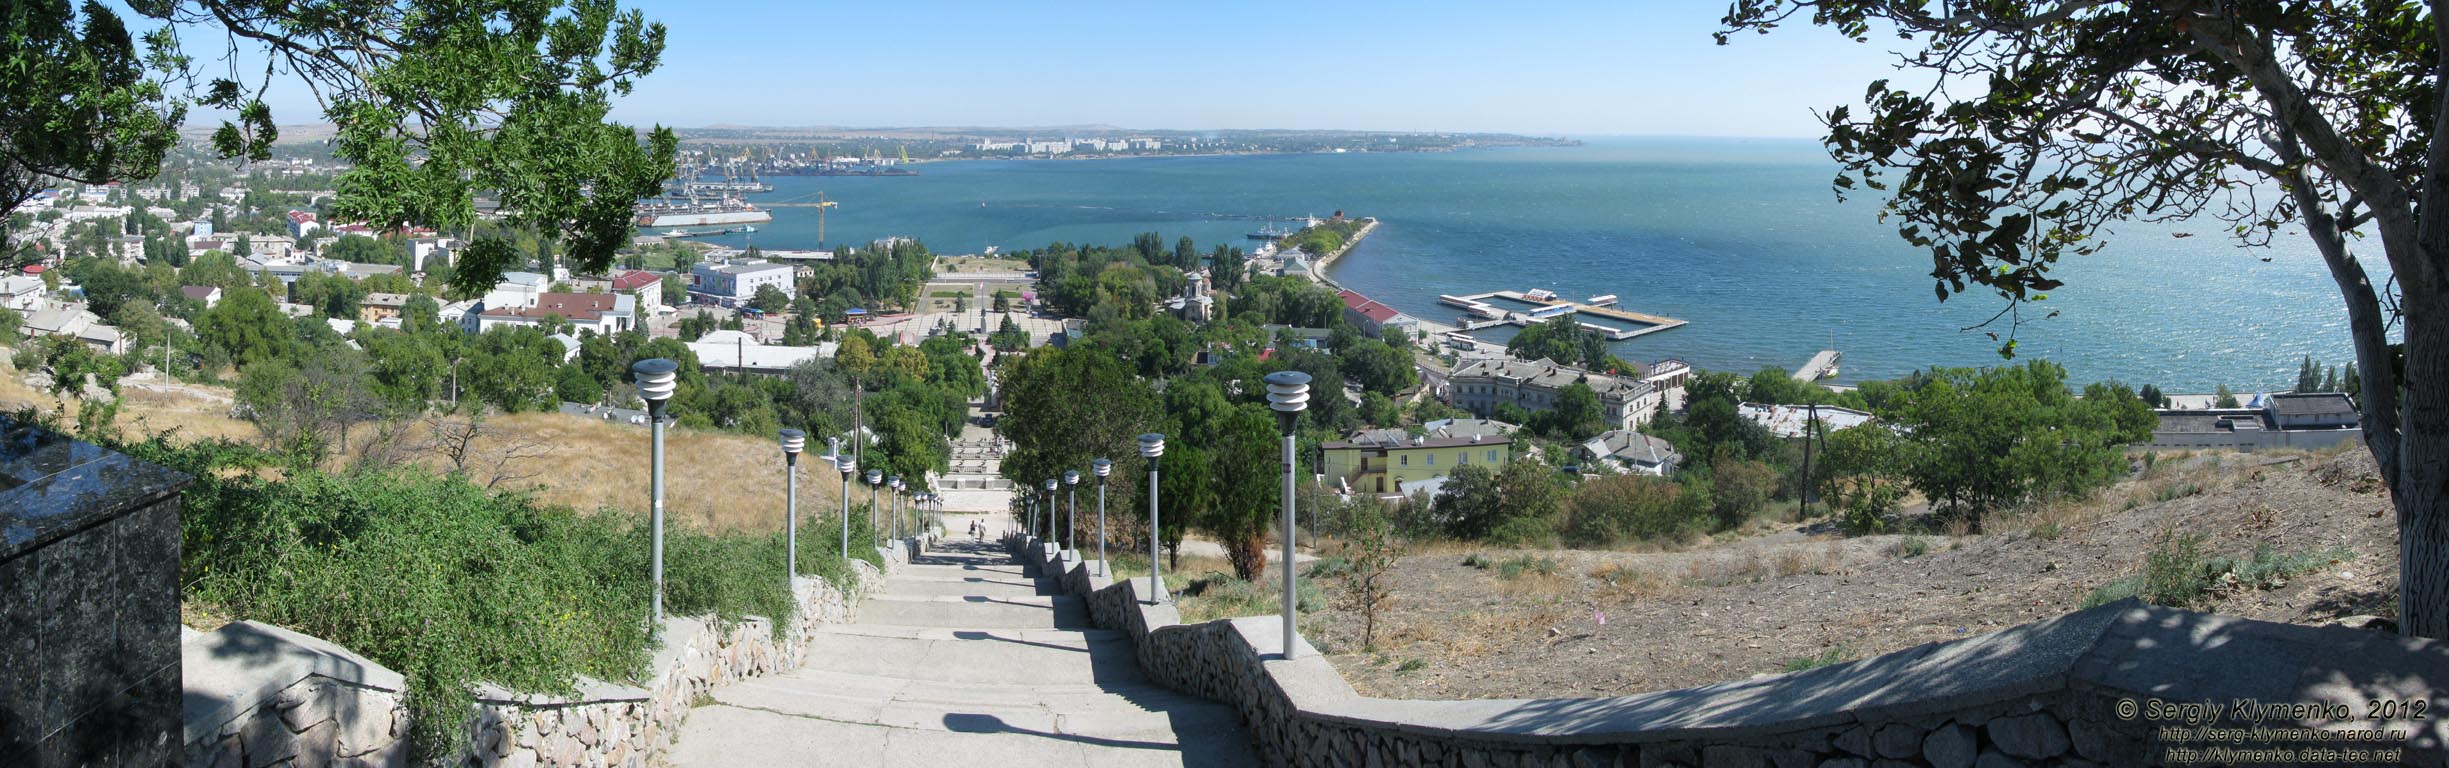 Крым, Керчь. Фото. Вид на город Керчь и Керченский залив с горы Митридат. Панорама ~120°.